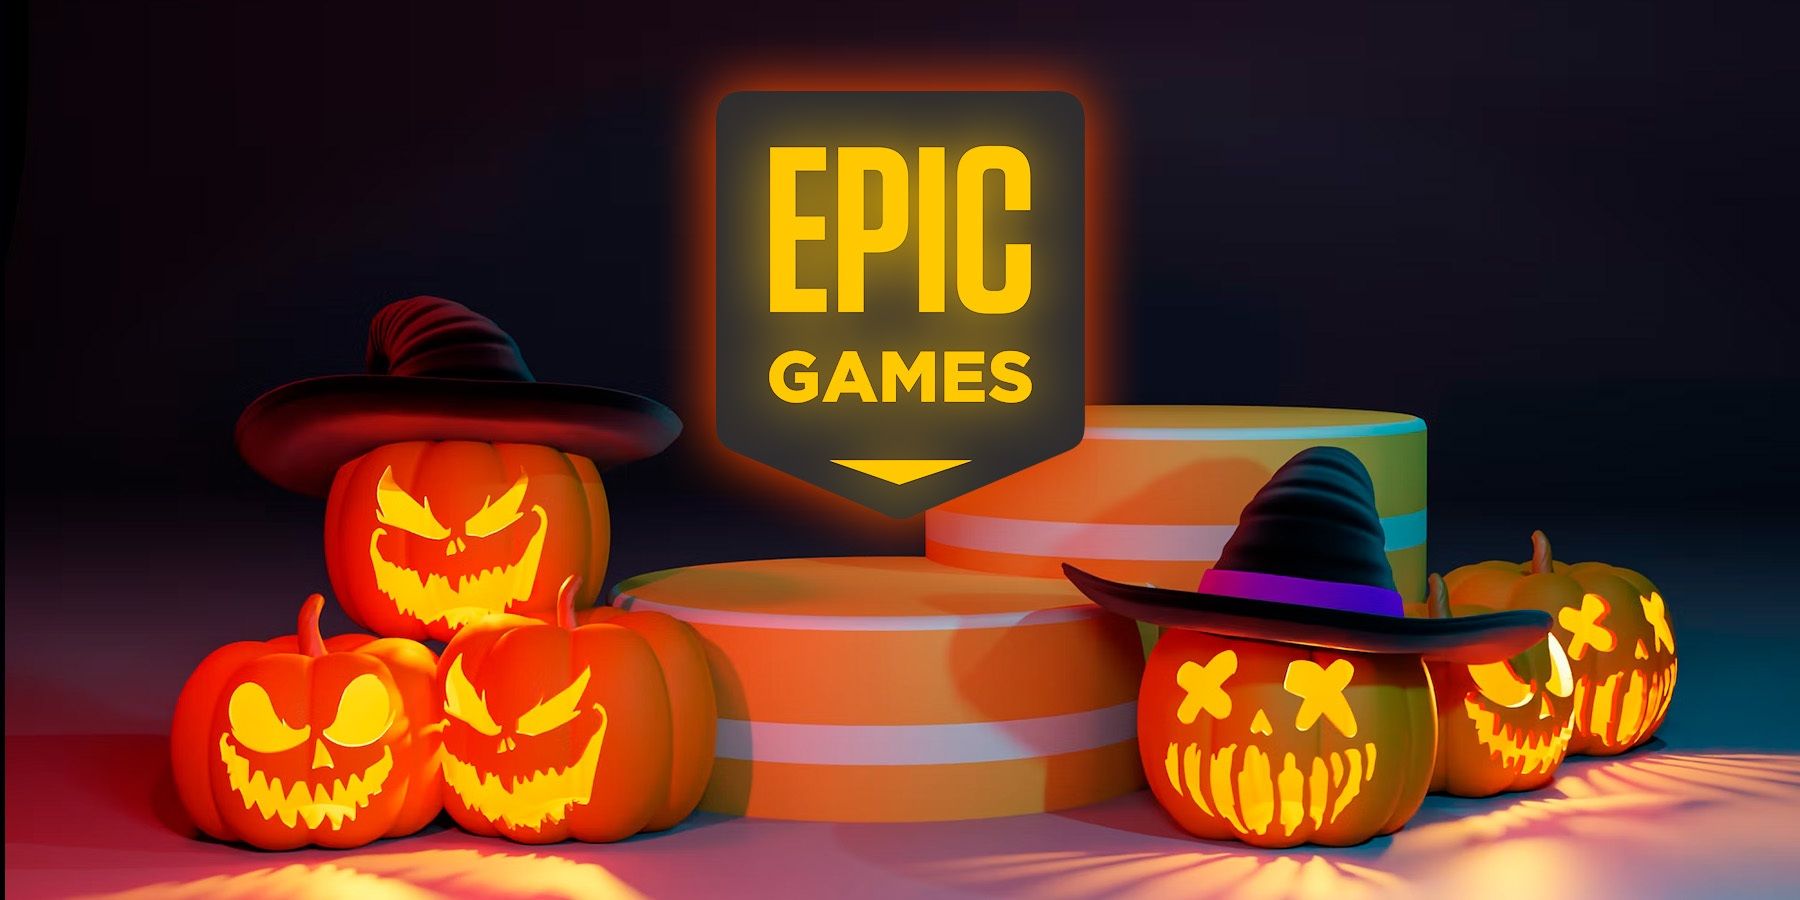 Epic Game Store faz promoção de halloween com jogos com 80% de